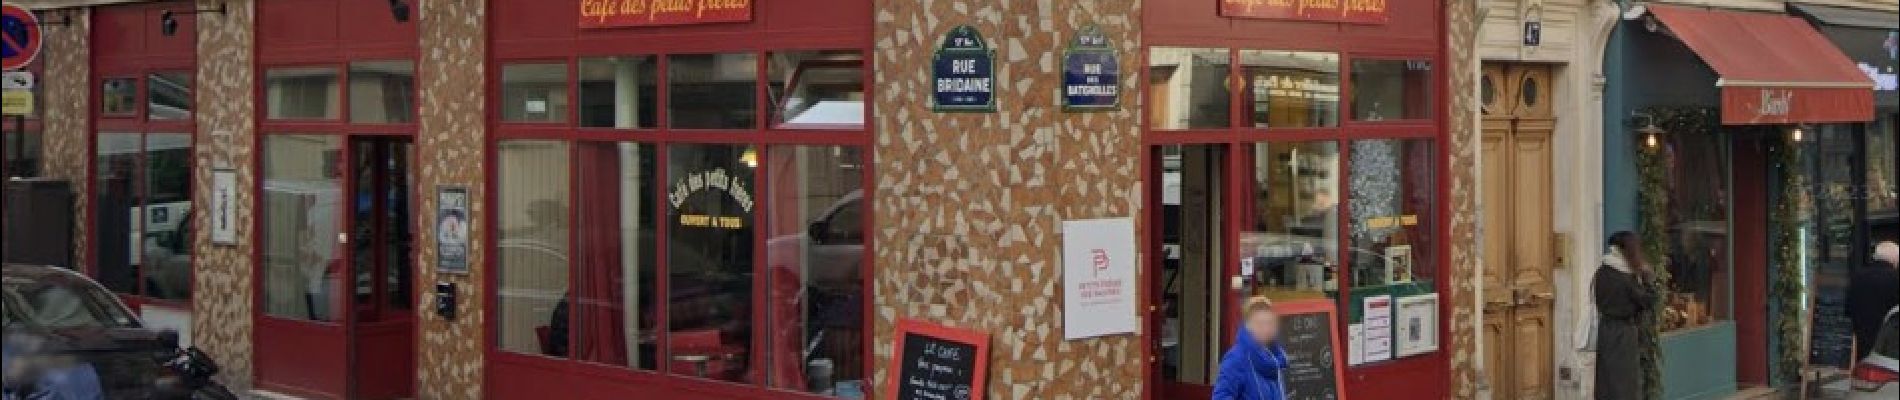 POI Parijs - Café le moins cher de Paris - Photo